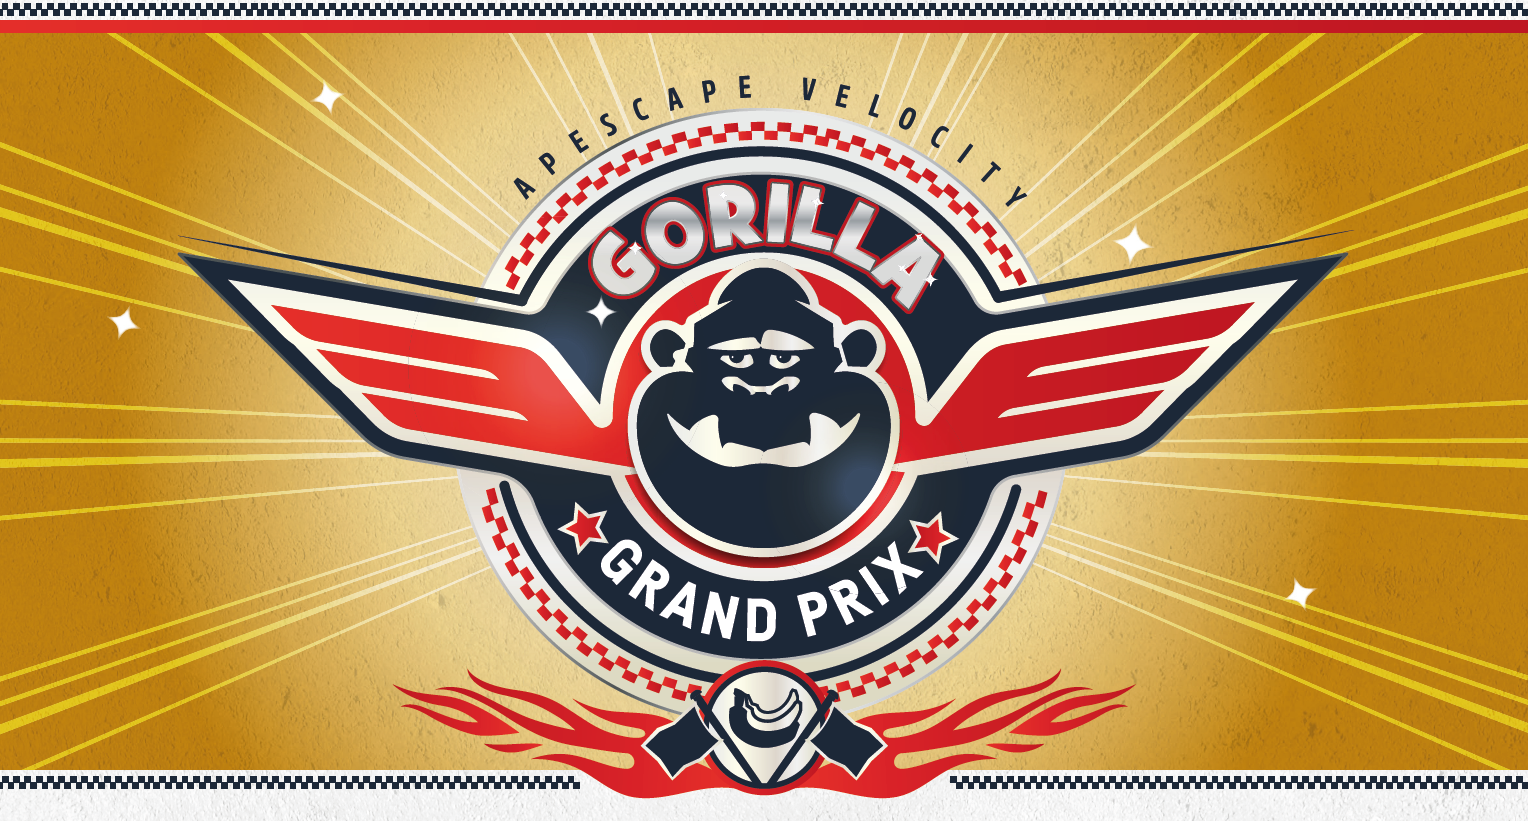 Gorilla Grand Prix: Apescape Velocity (Prototype)